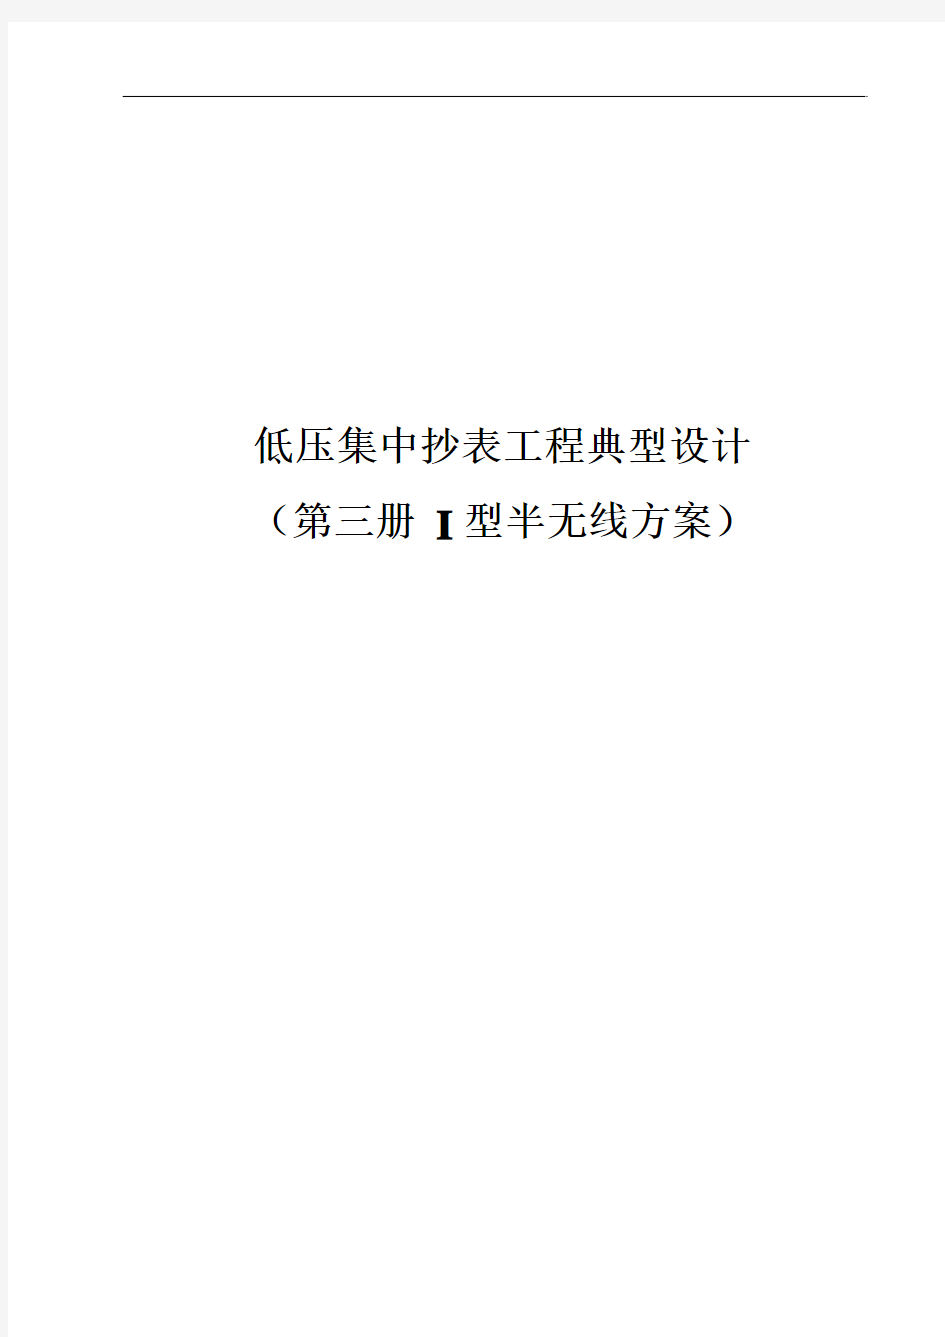 【第三册-I型半无线分册】广东电网公司低压集抄工程典型设计20160306